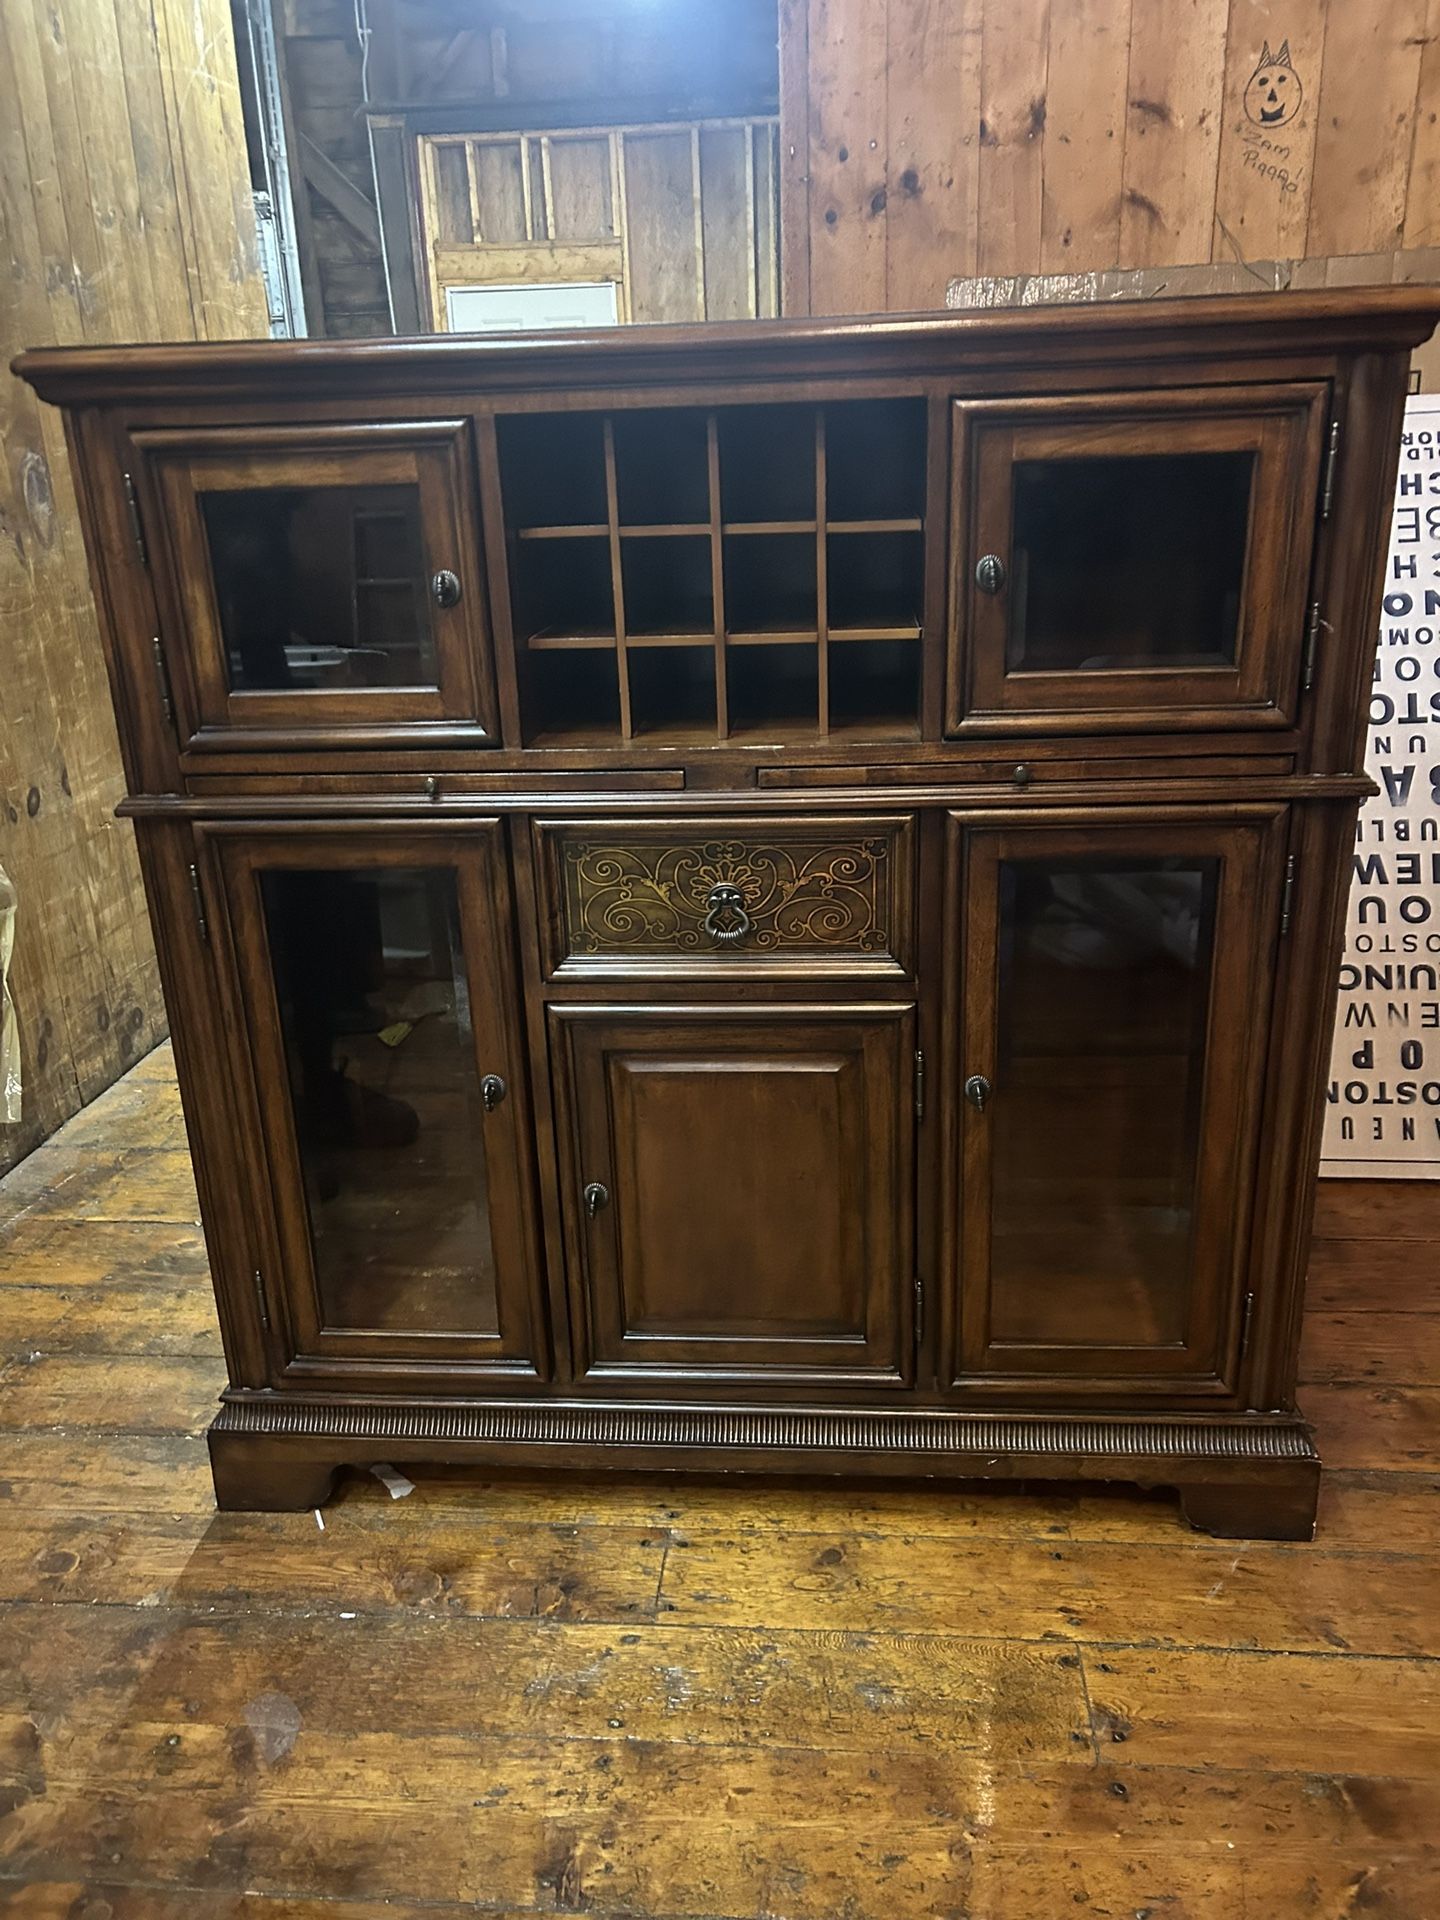 Antique Wood Multi-Purpose Cabinet